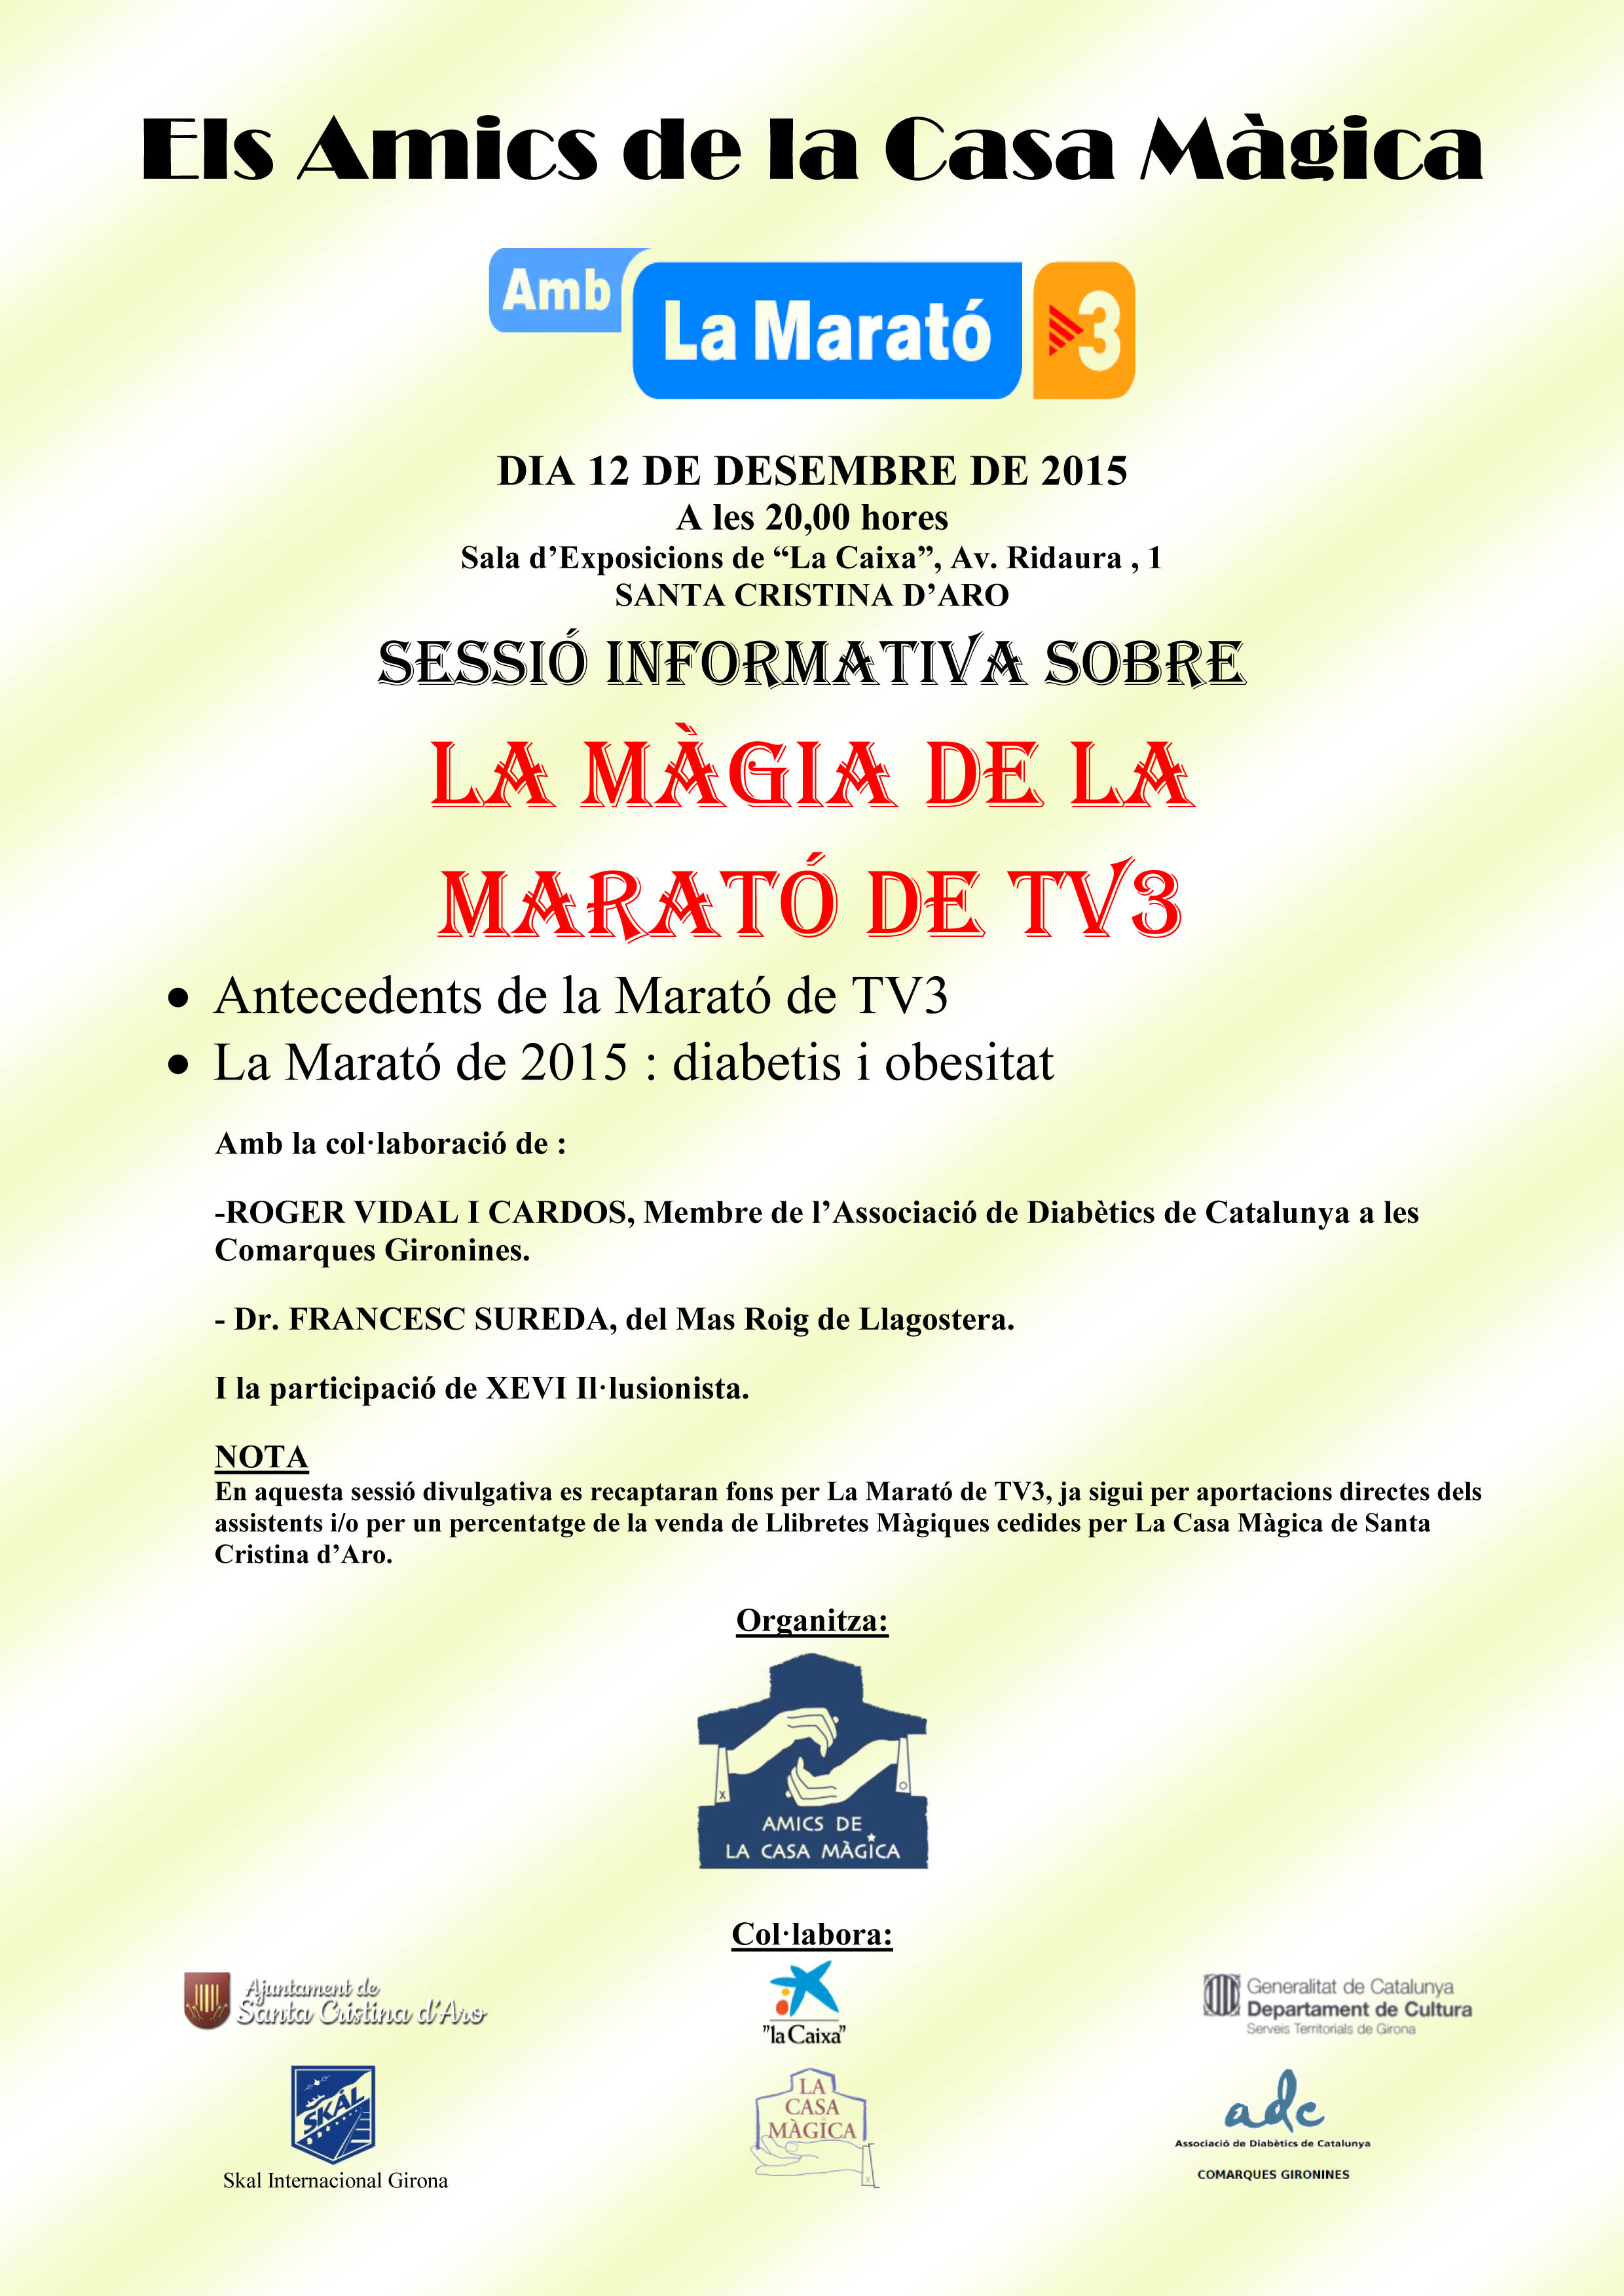 La Màgia de la Marató de TV3